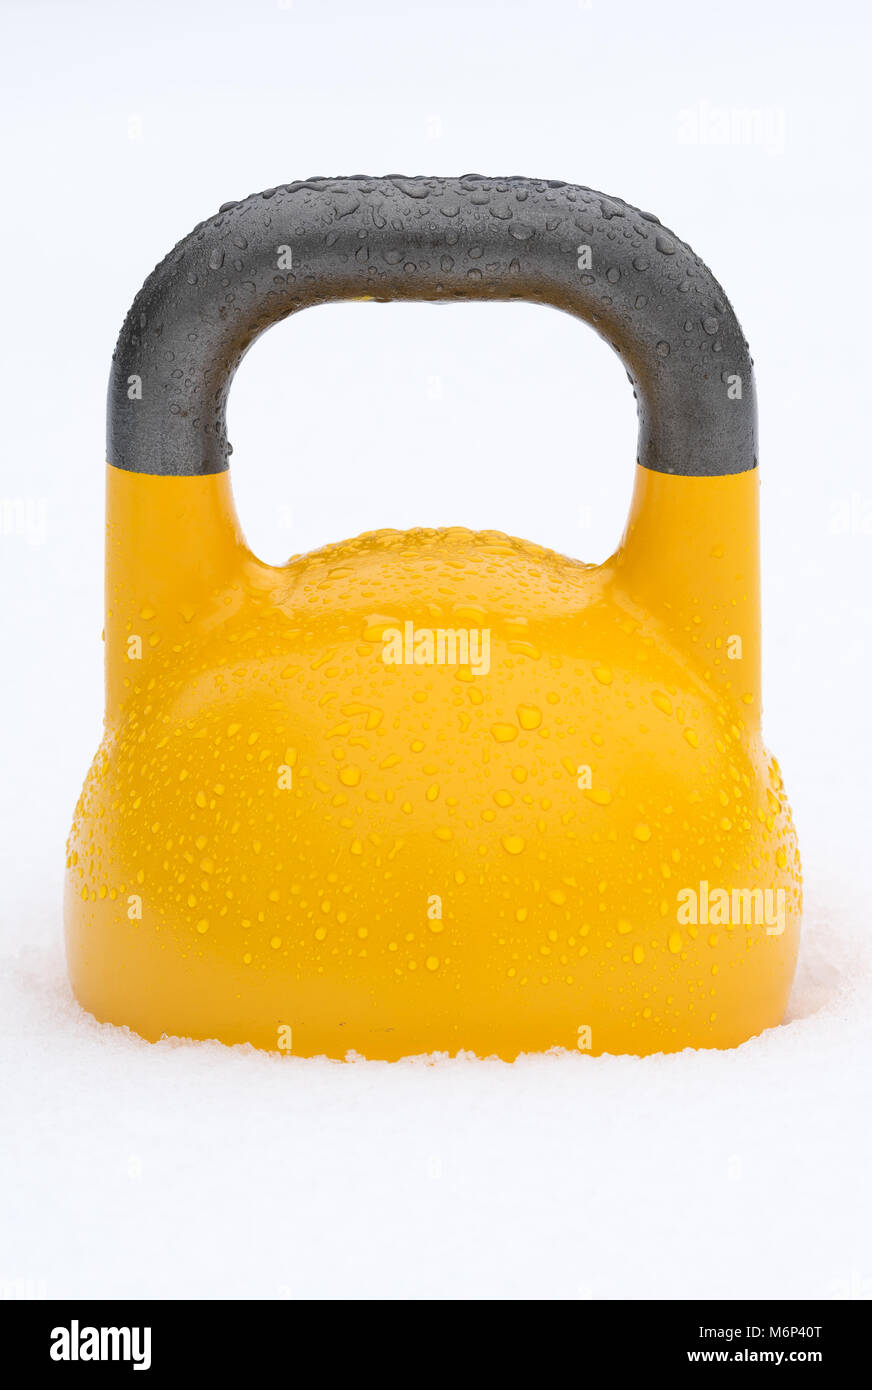 Poids kettlebell formation jaune à l'extérieur dans la neige. La concurrence verte kettlebells pèsent 16 kg. Banque D'Images